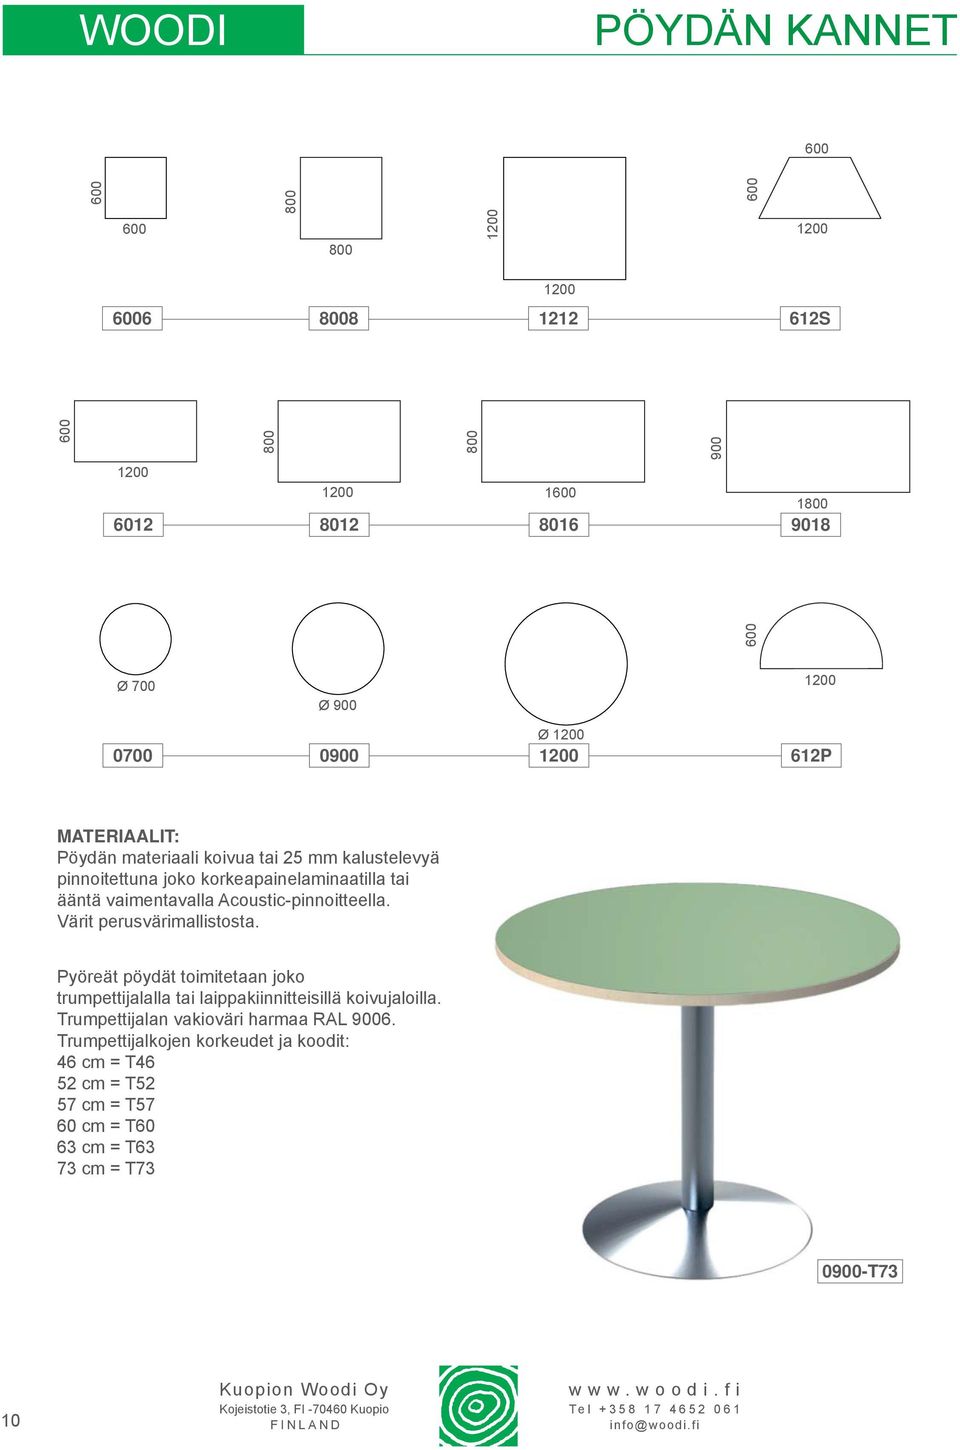 Acoustic-pinnoitteella. Värit perusvärimallistosta. Pyöreät pöydät toimitetaan joko trumpettijalalla tai laippakiinnitteisillä koivujaloilla.